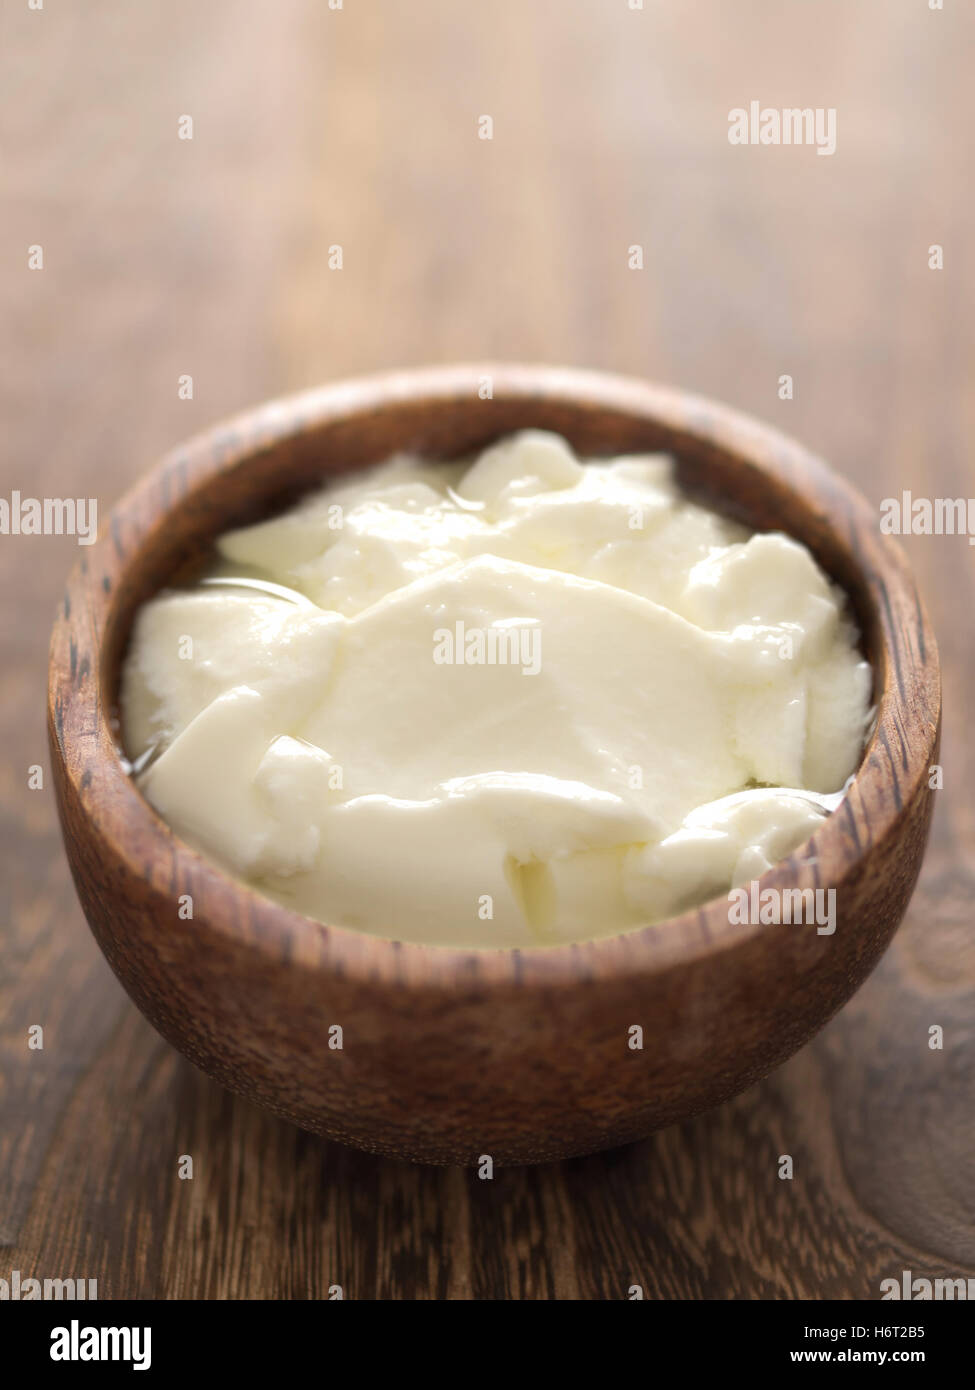 Milch sauer Kalzium Molkerei Zutat Snack Joghurt Farbe Closeup Erfrischung Milch vertikale sauer schlicht niemand Kalzium Molkereifarbe Stockfoto